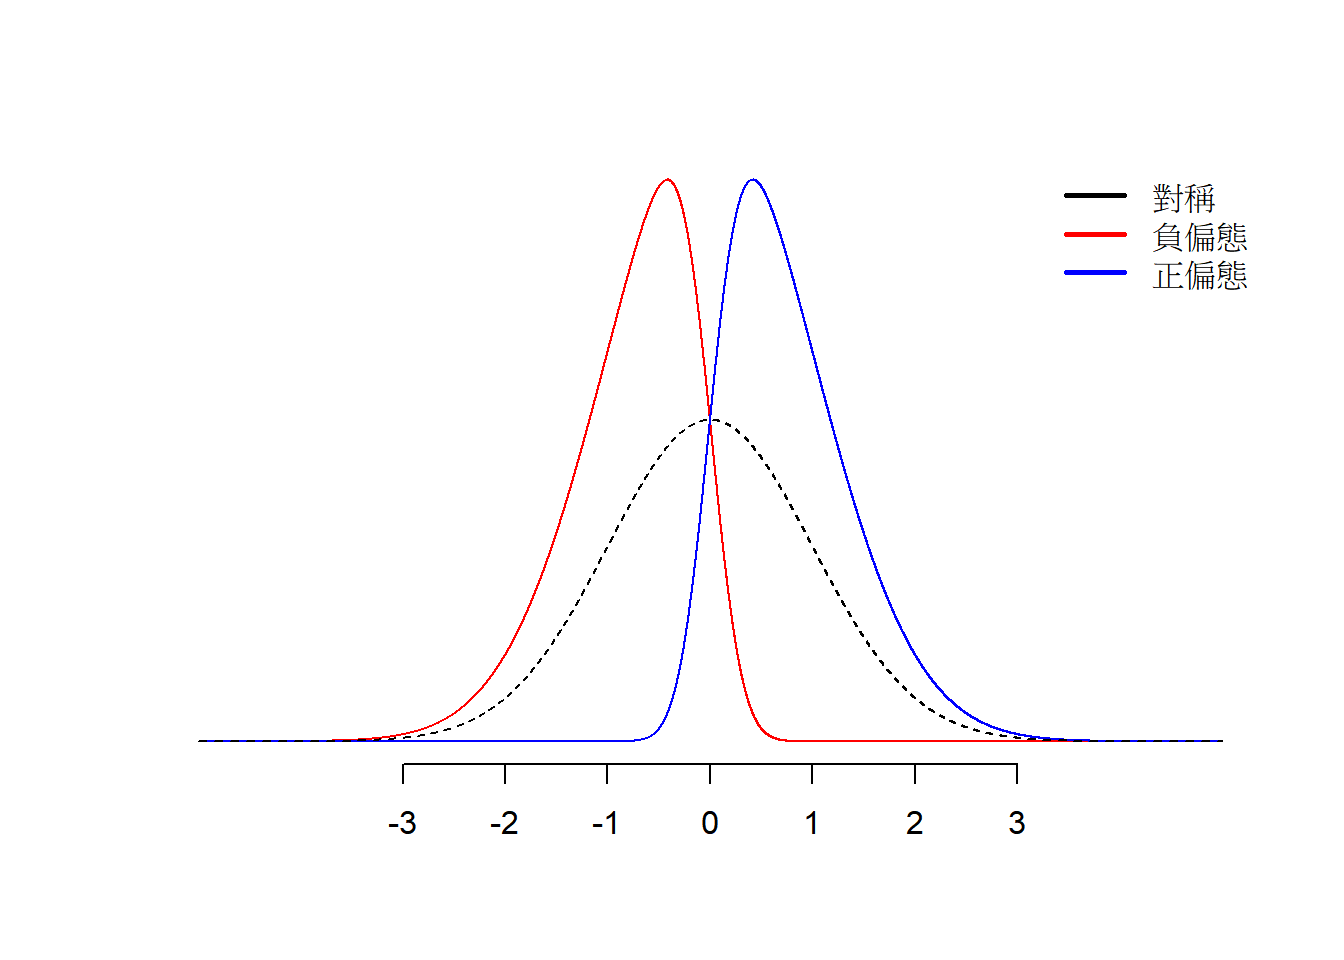 不同偏態的資料型態。黑色曲線是常態分配曲線；紅色曲線為負偏態；藍色曲線為正偏態。